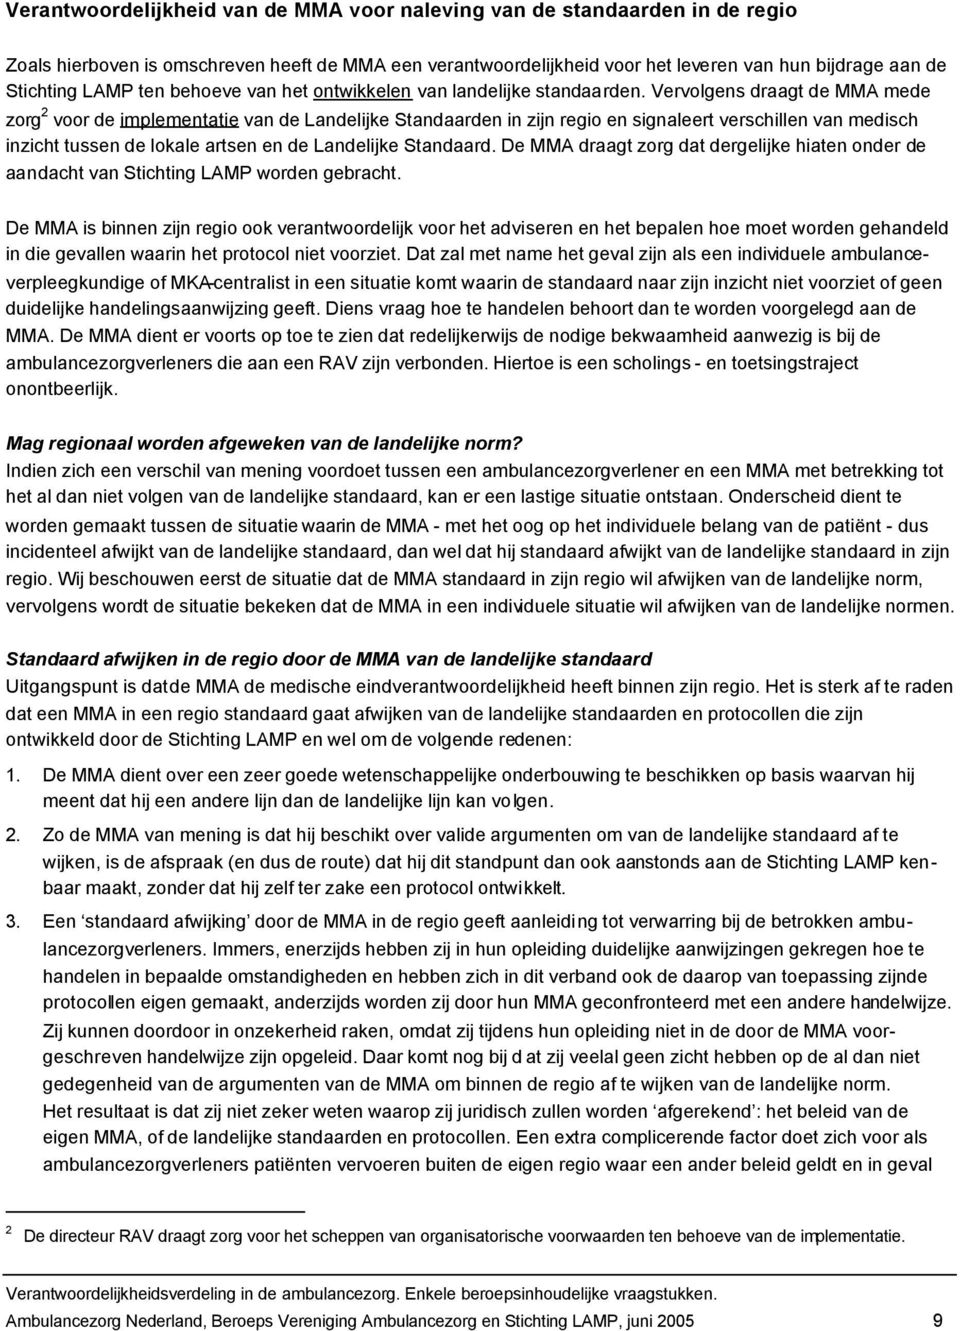 Vervolgens draagt de MMA mede zorg 2 voor de implementatie van de Landelijke Standaarden in zijn regio en signaleert verschillen van medisch inzicht tussen de lokale artsen en de Landelijke Standaard.